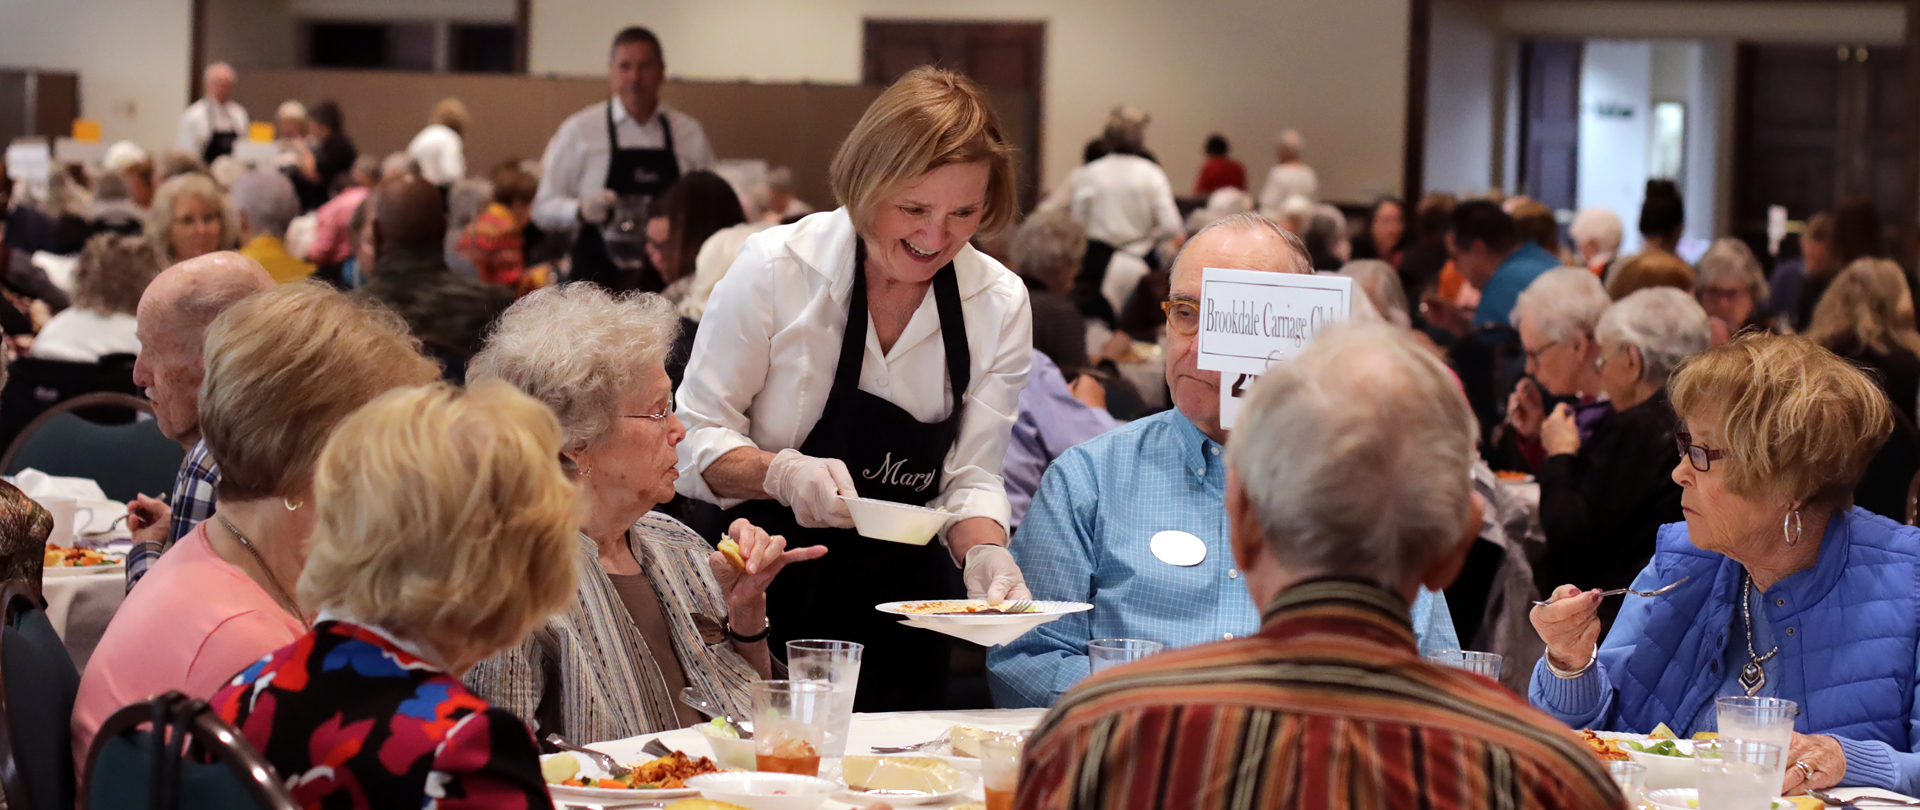 Senior Adult Luncheon
Thursday, October 26
Register now!
